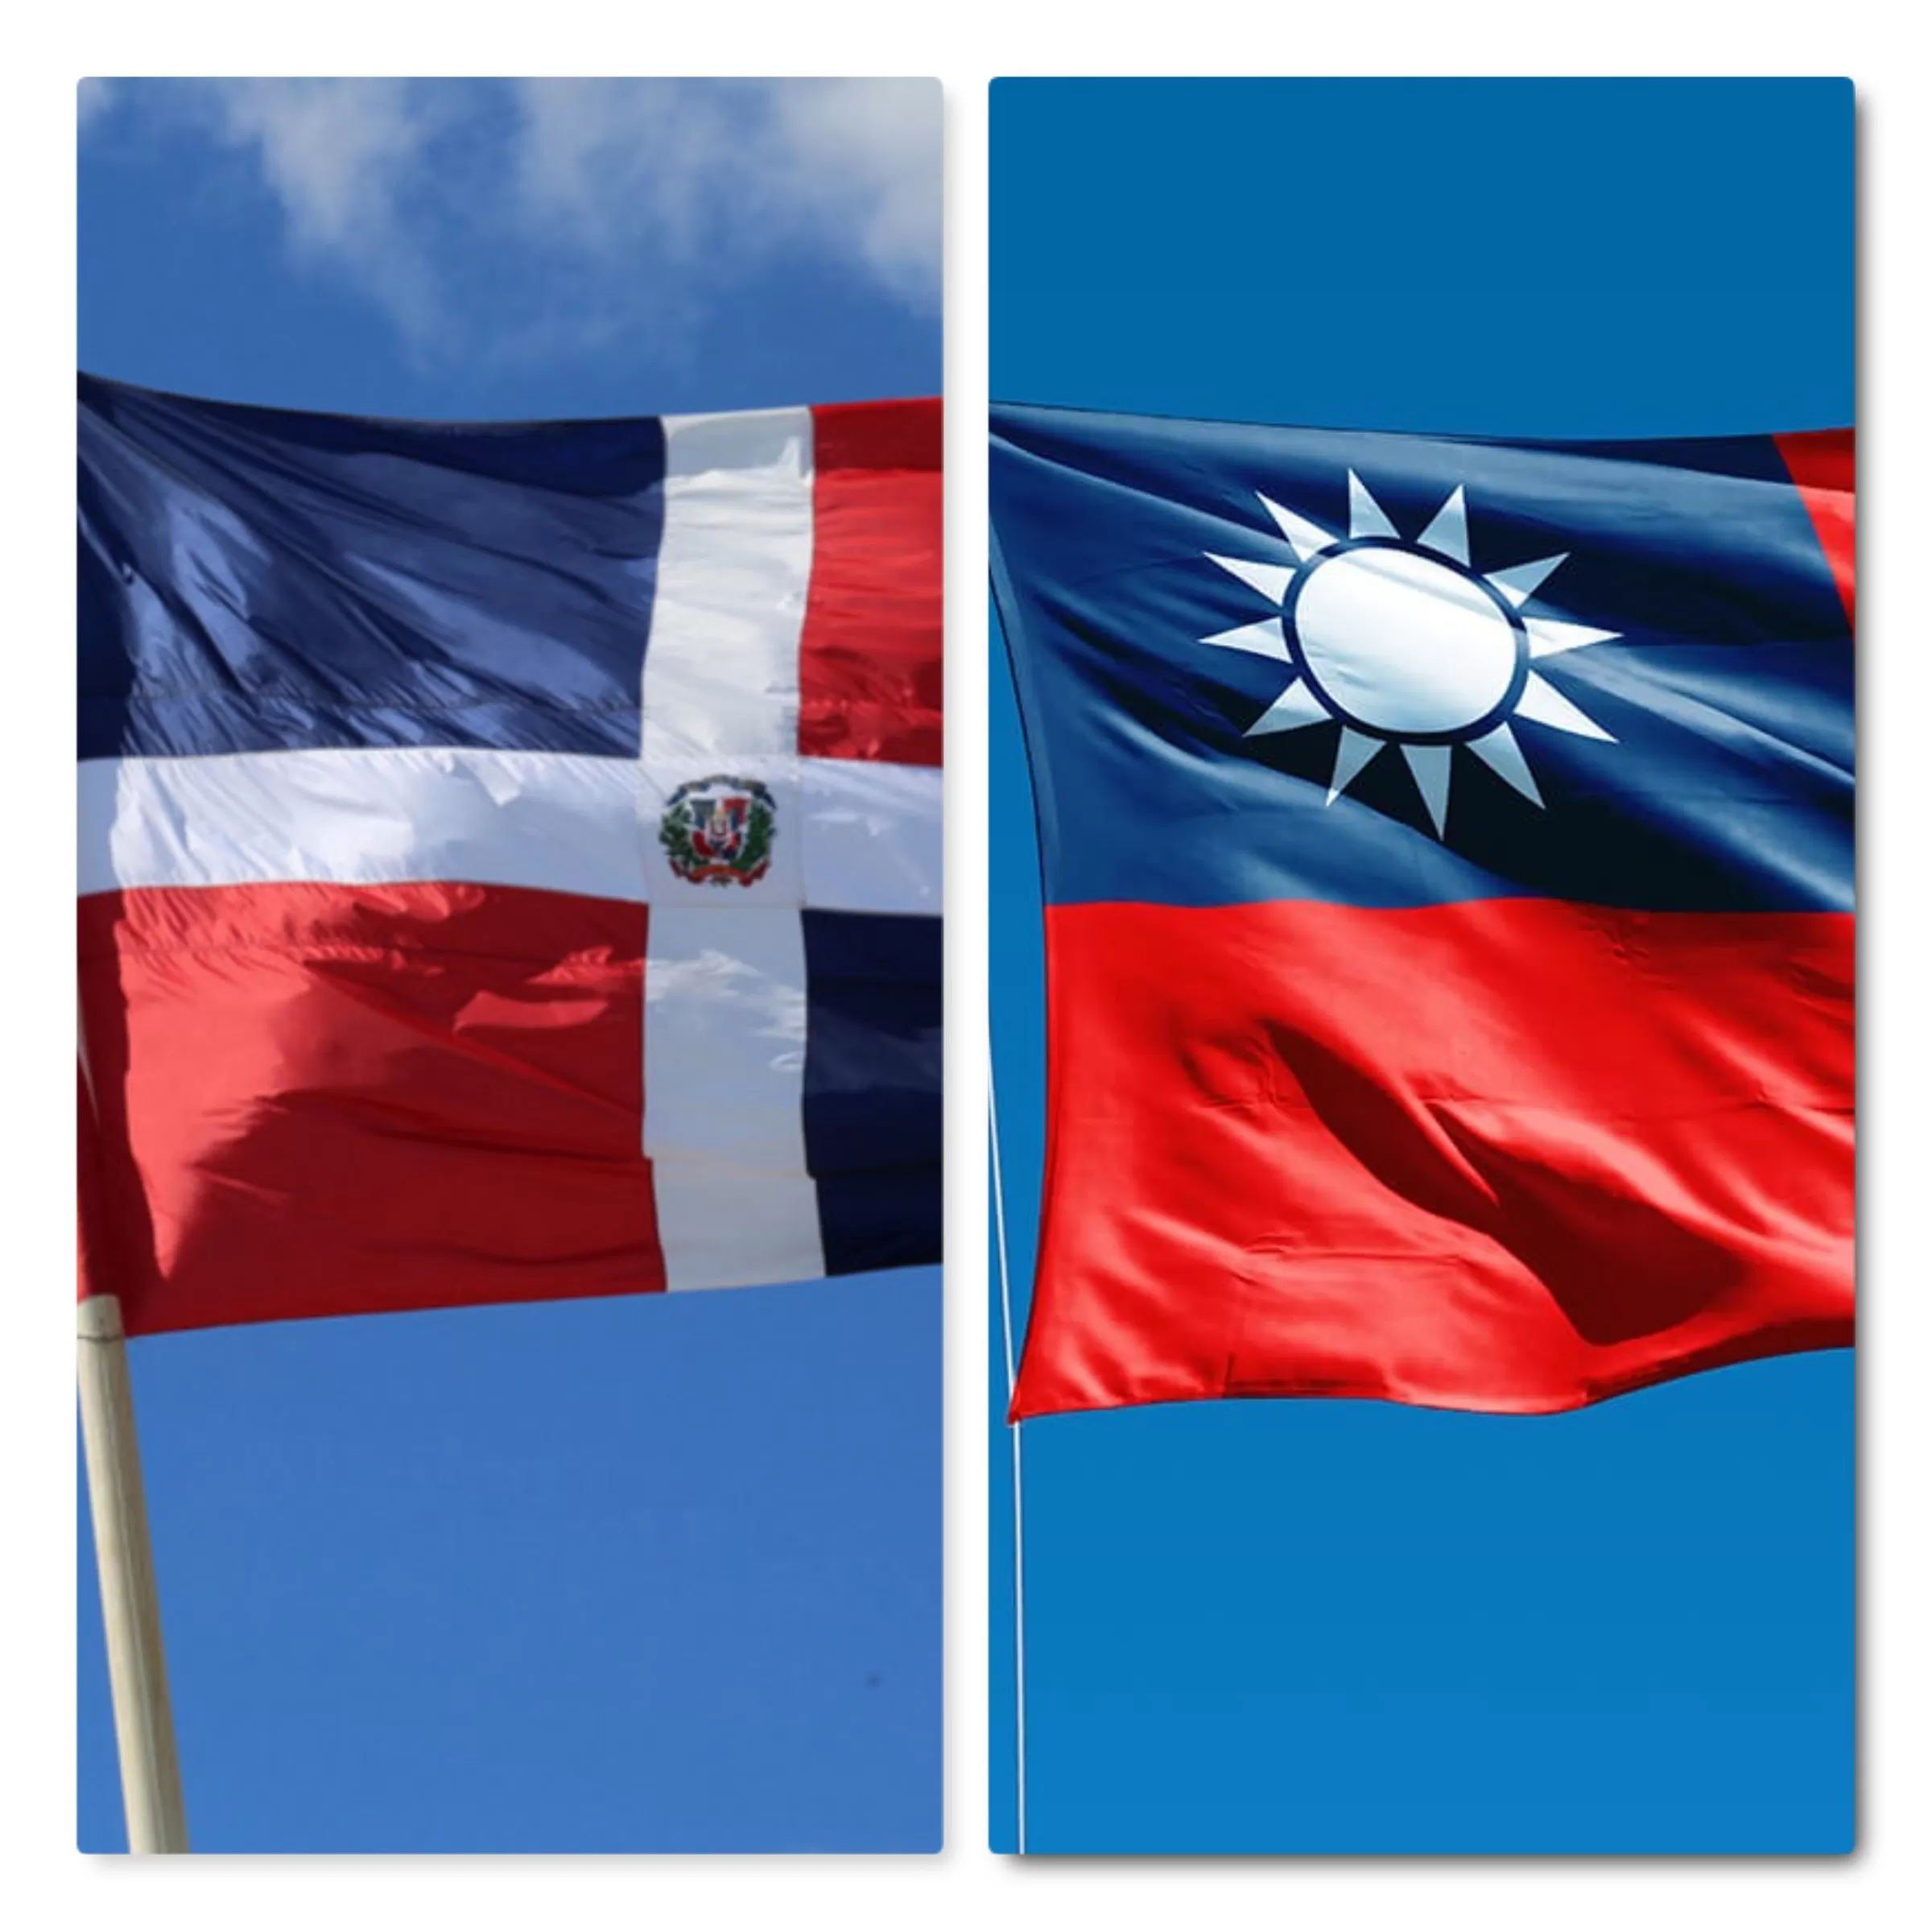 Un 89 % dominicanos apuestan apertura relaciones con Taiwán conforme revela otra encuesta